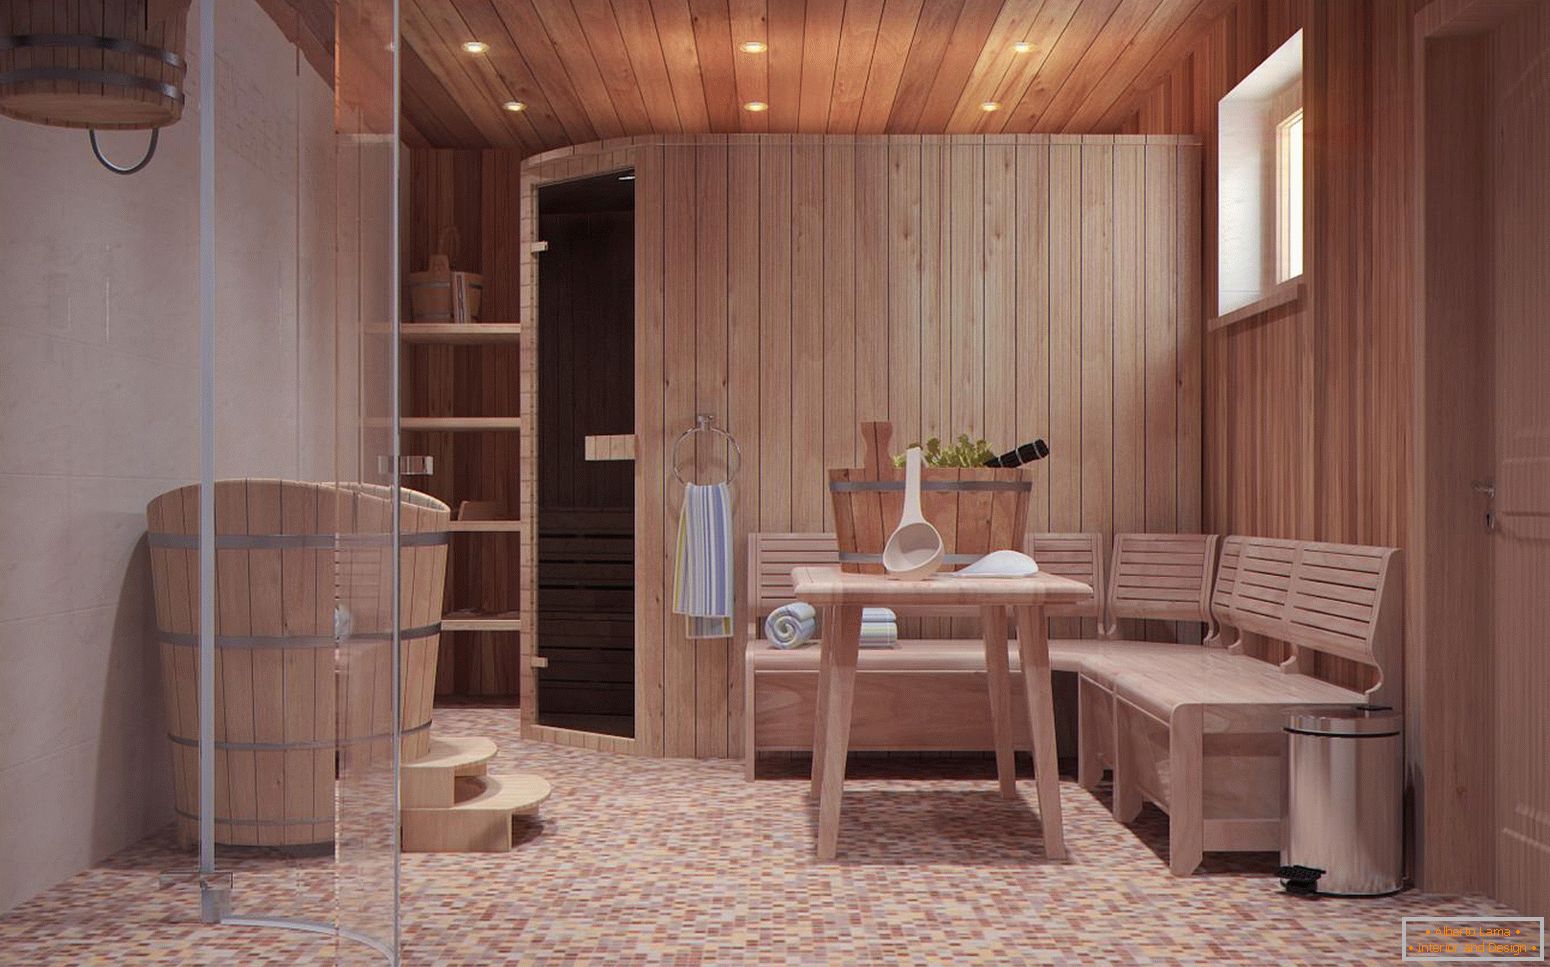 Une salle de relaxation dans un bain scandinave